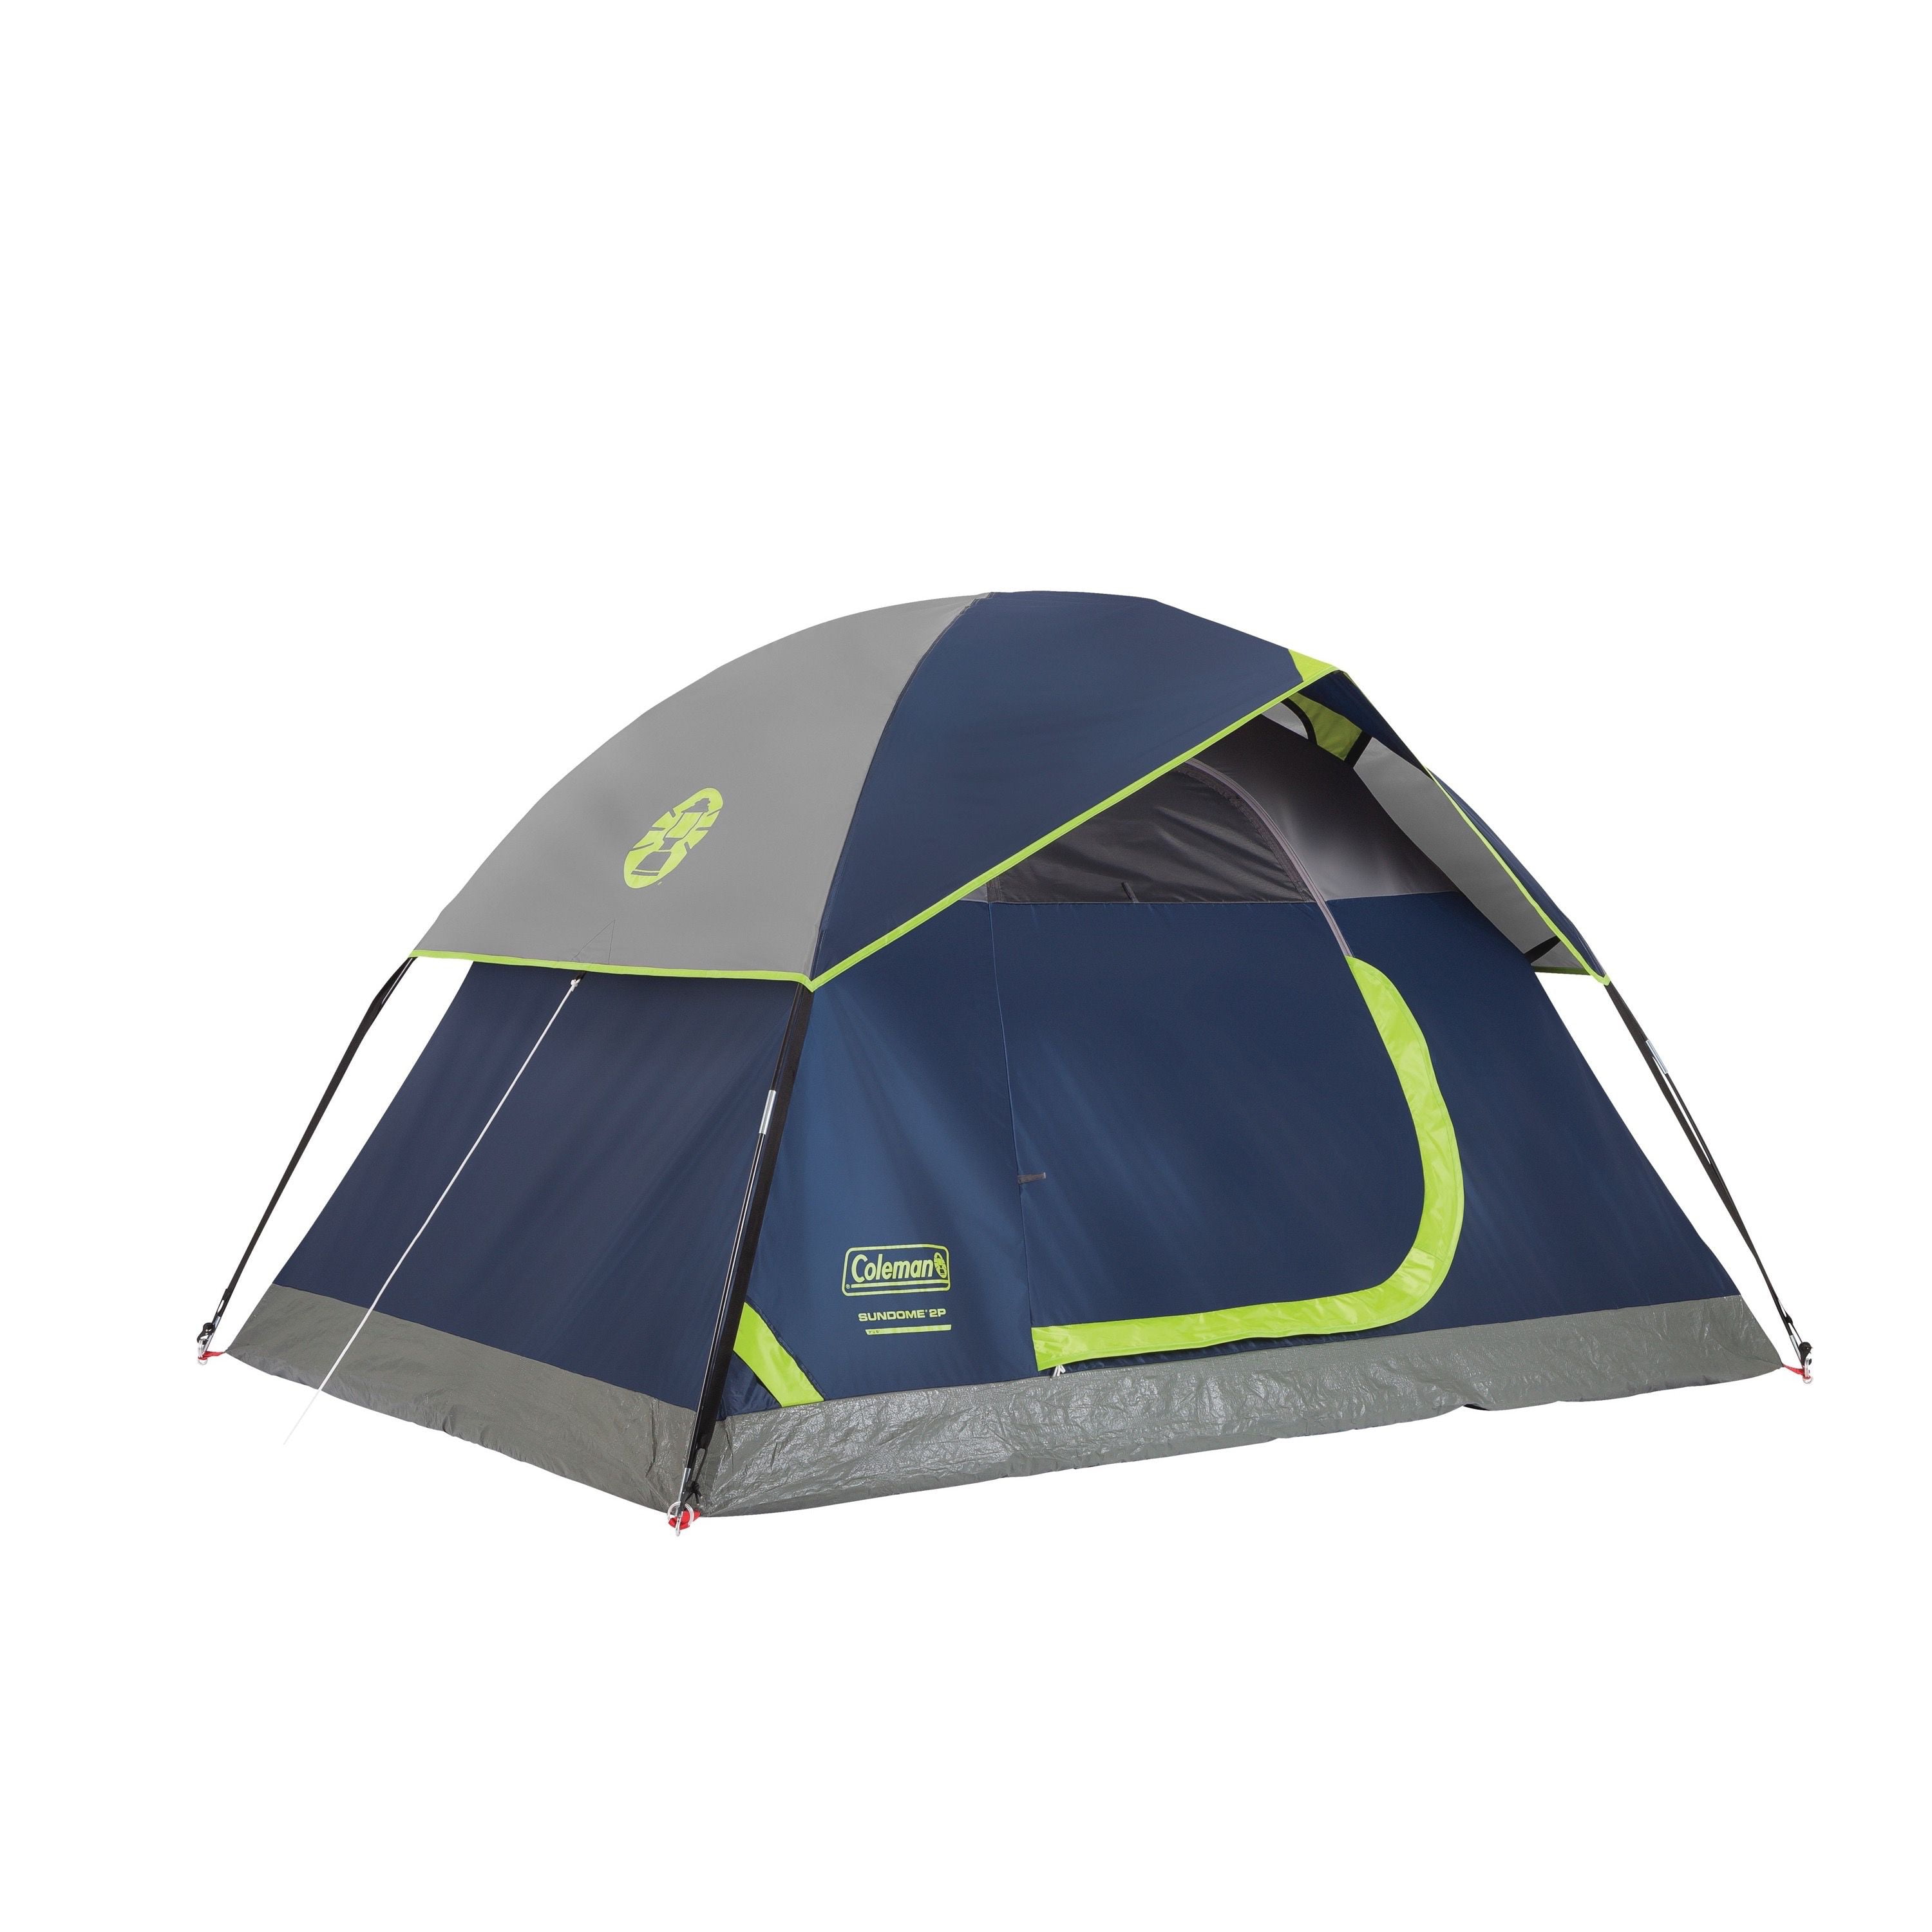 Coleman 3-Person Dome Tent - Walmart.com